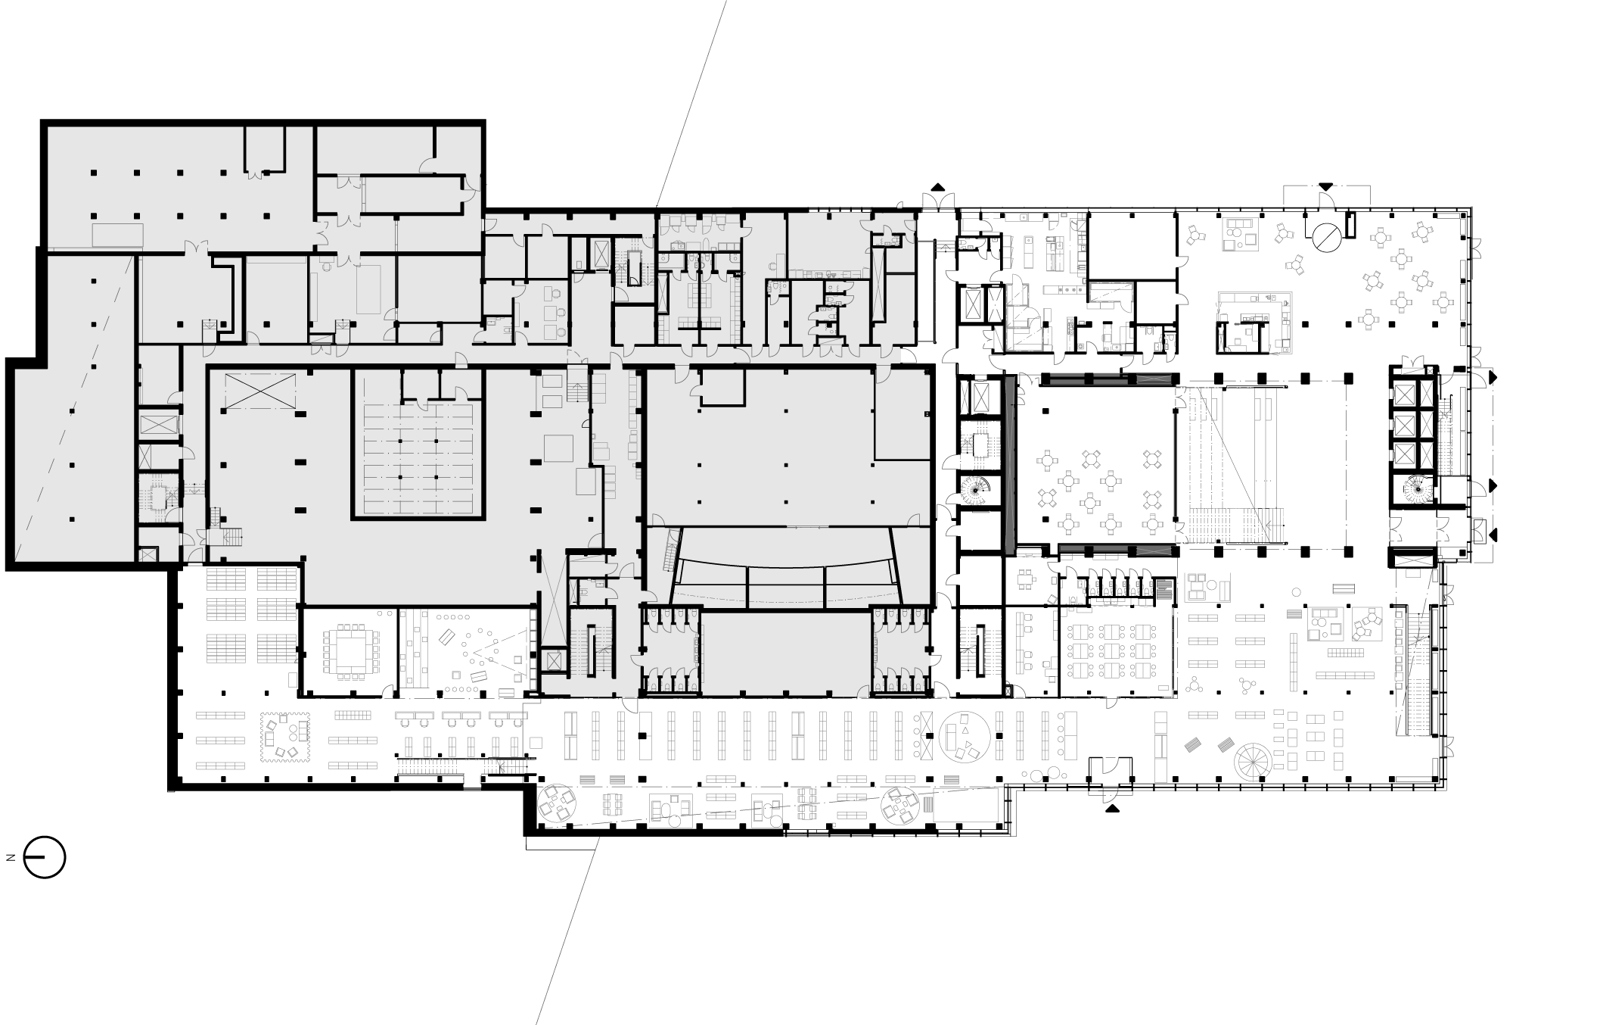 Plan av første etasje på kulturhus. Arkitekt tegning.